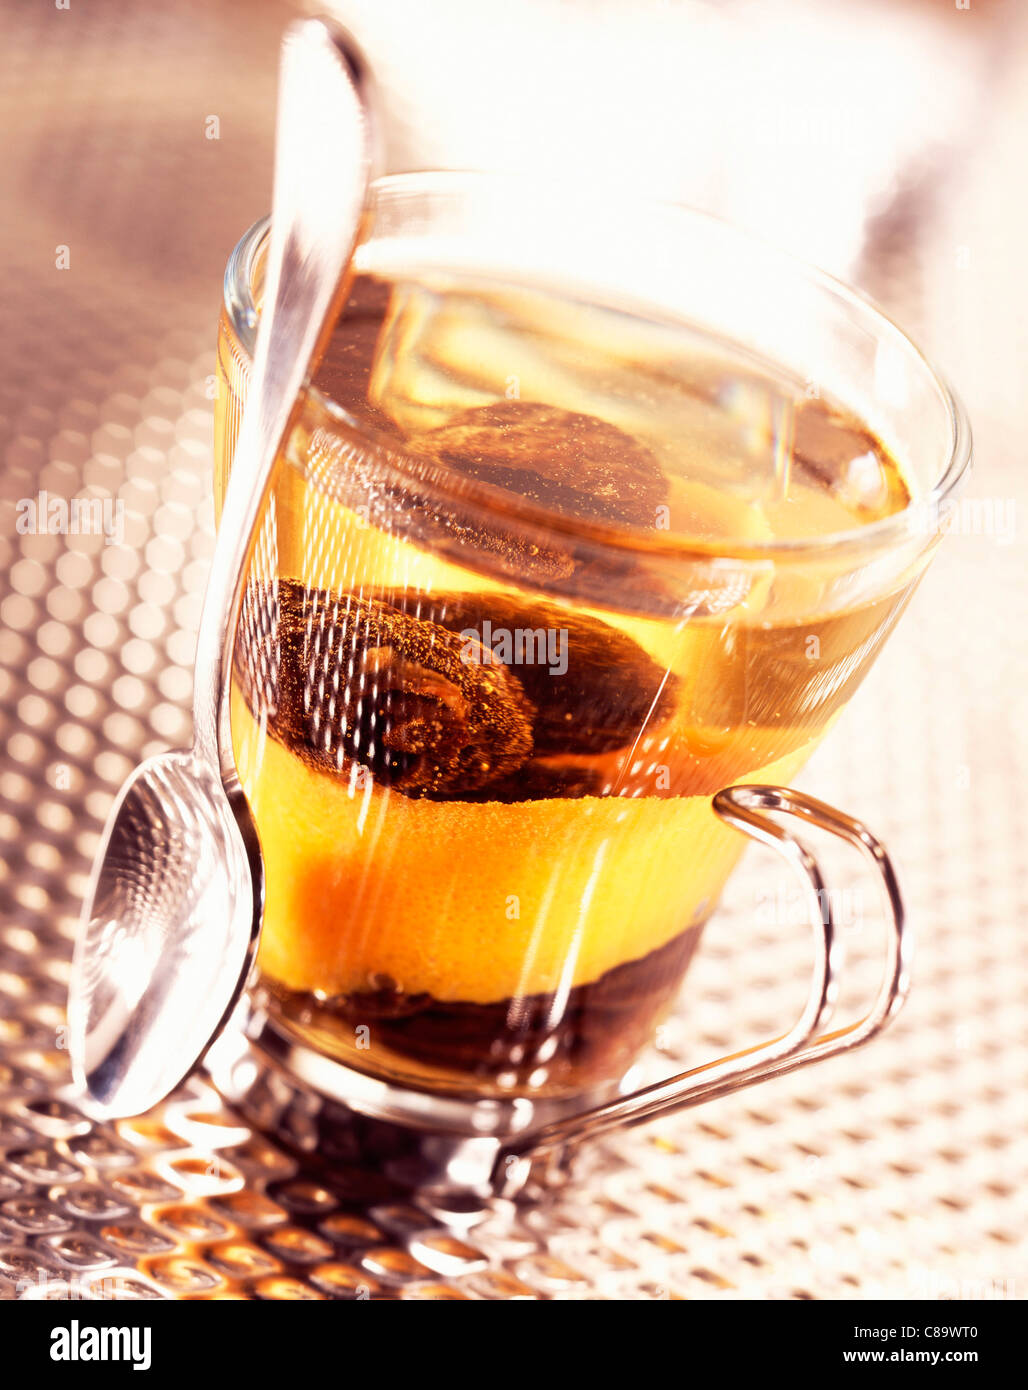 Prunes in tea with orange zest Stock Photo